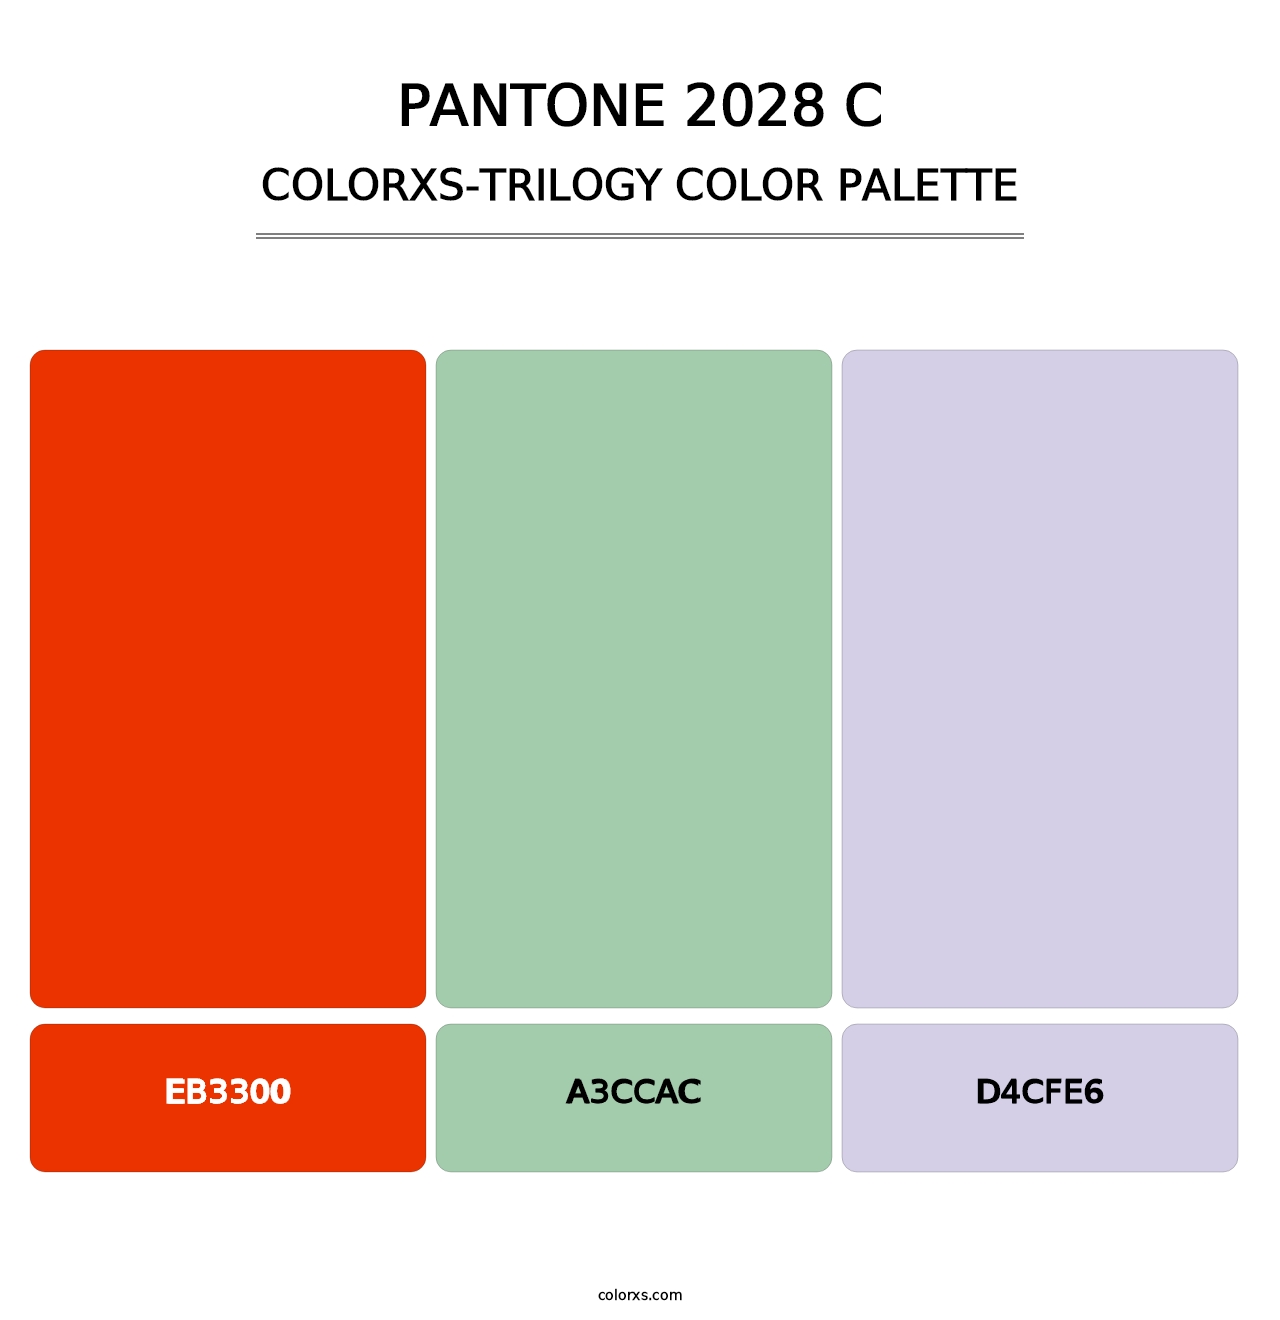 PANTONE 2028 C - Colorxs Trilogy Palette